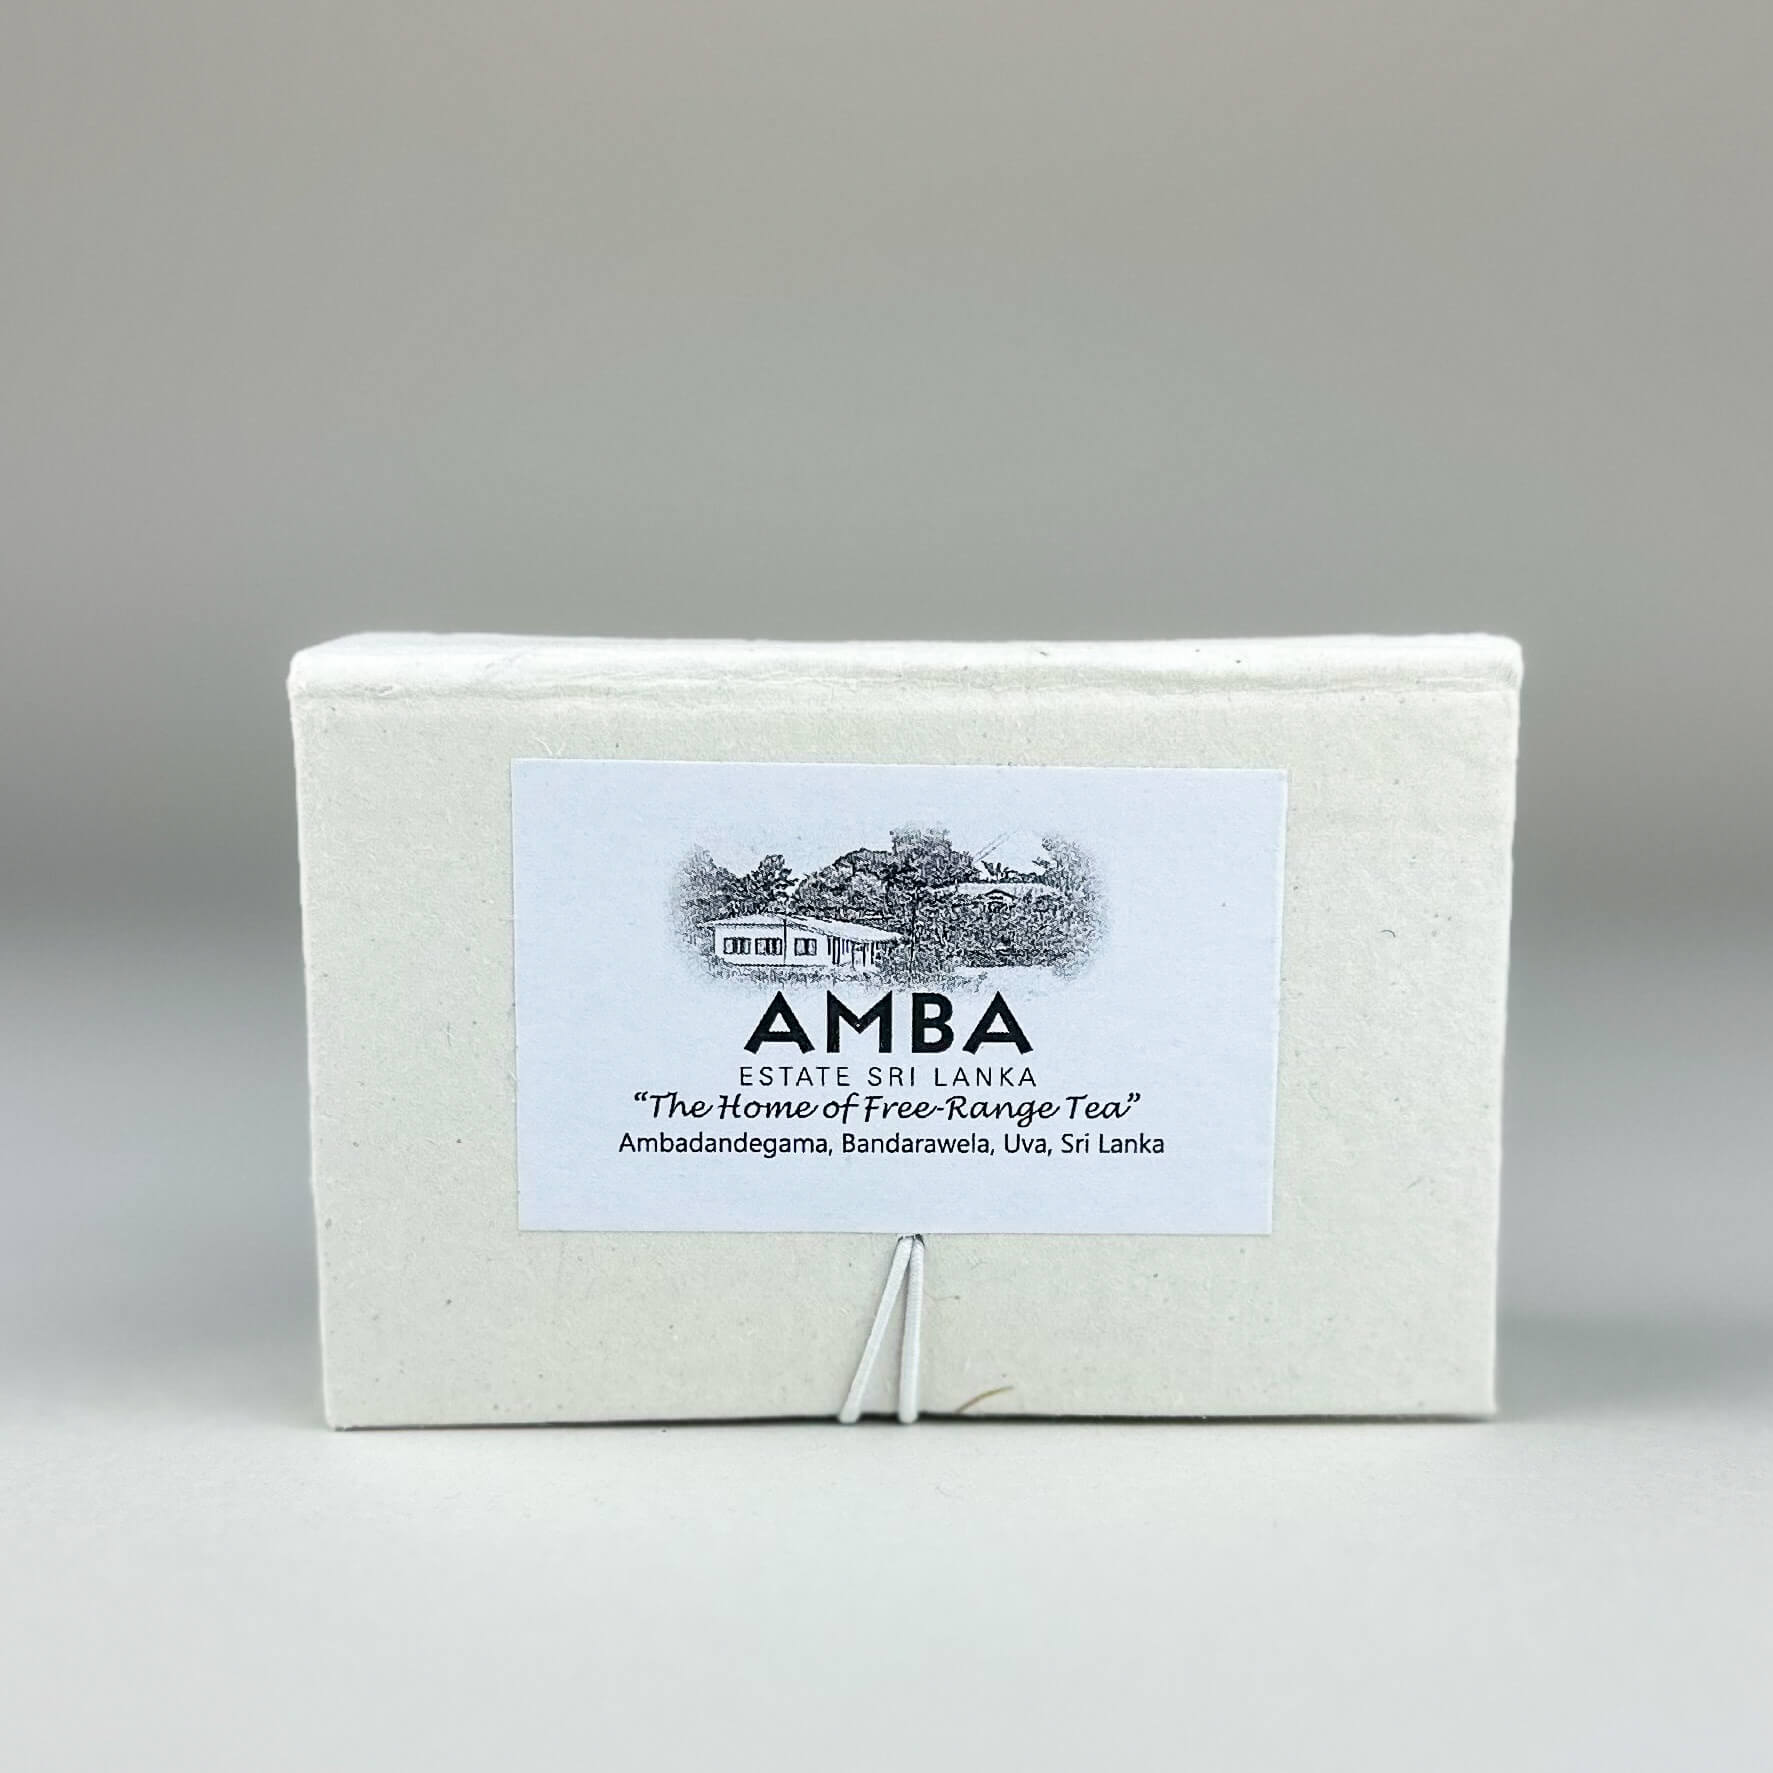 AMBA's White Tea Stars from Uva